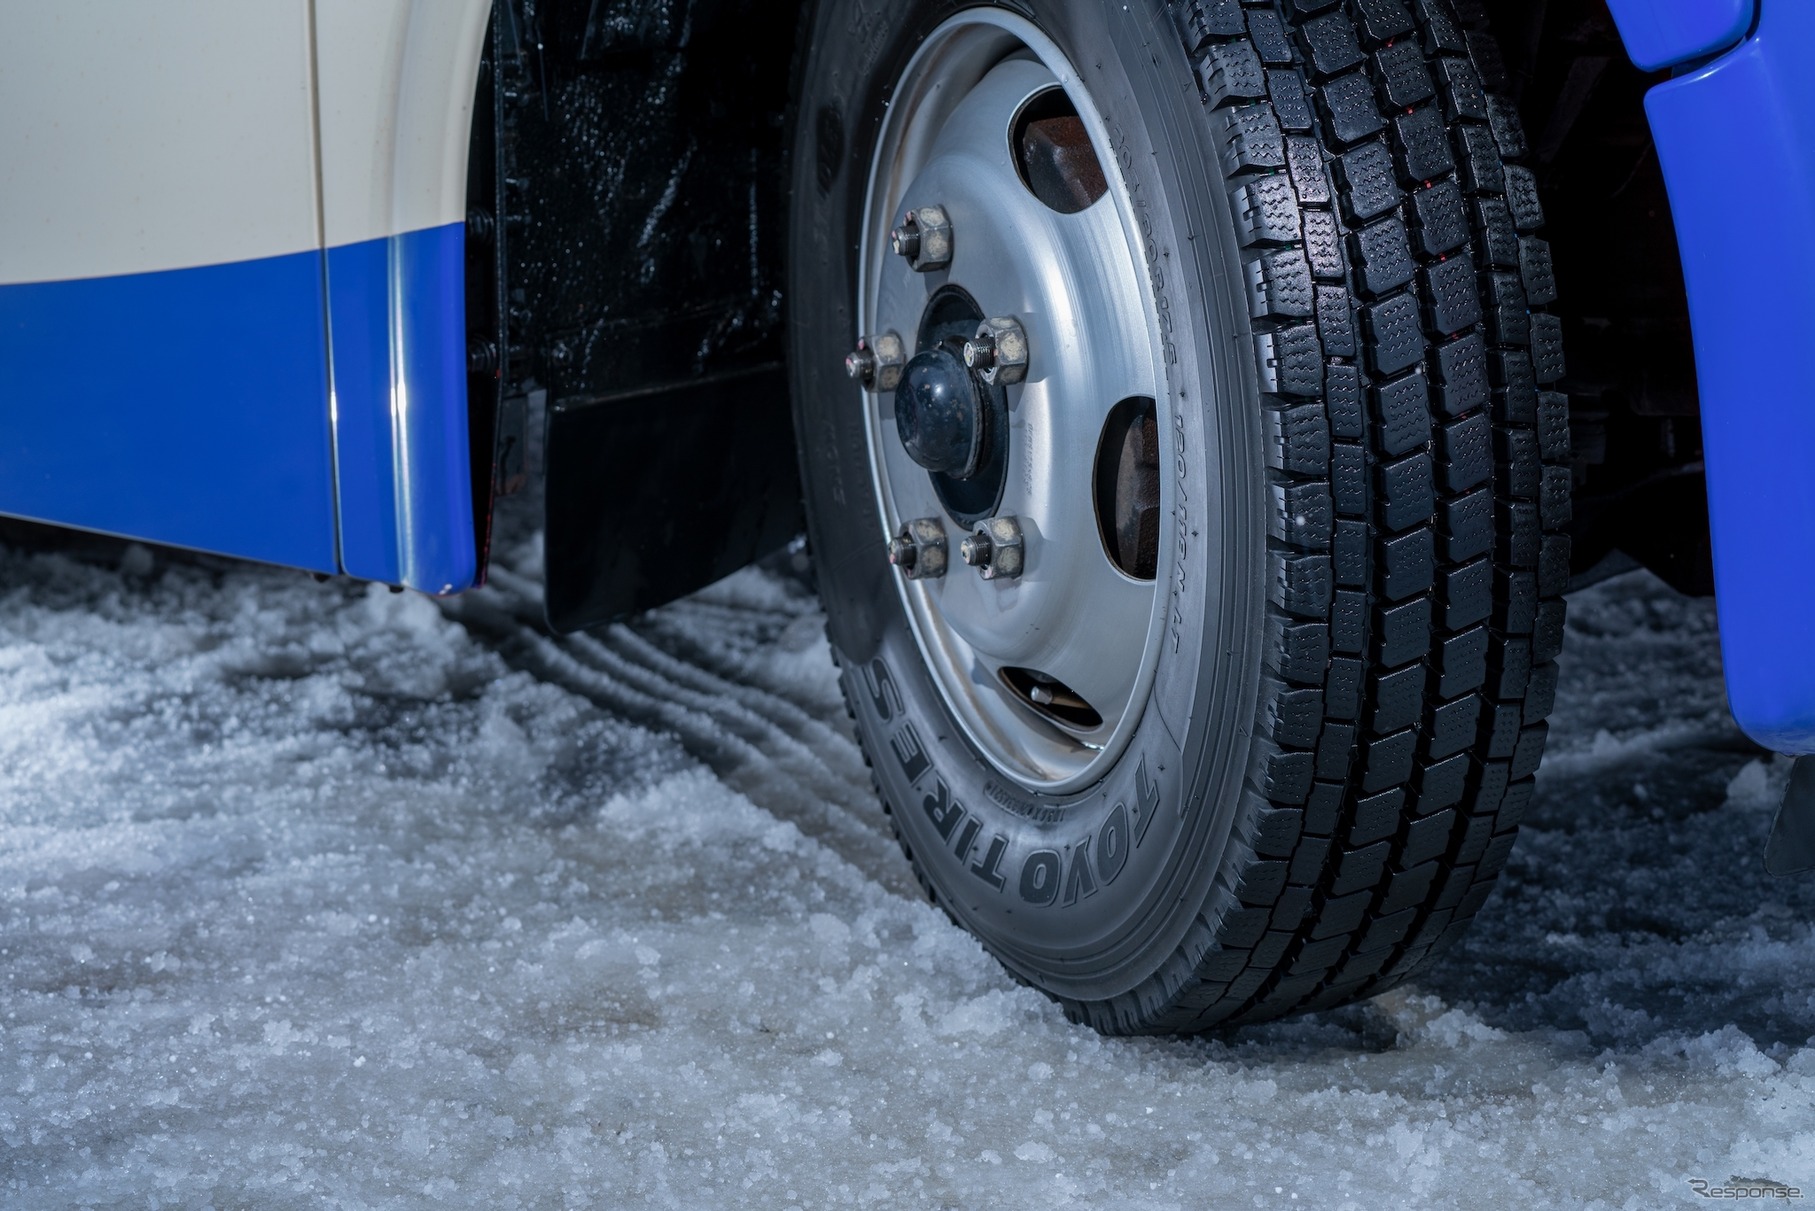 「M937」は通年の使用を考えて、スタッドレスとしての冬性能・耐摩耗性能を両立させたタイヤである